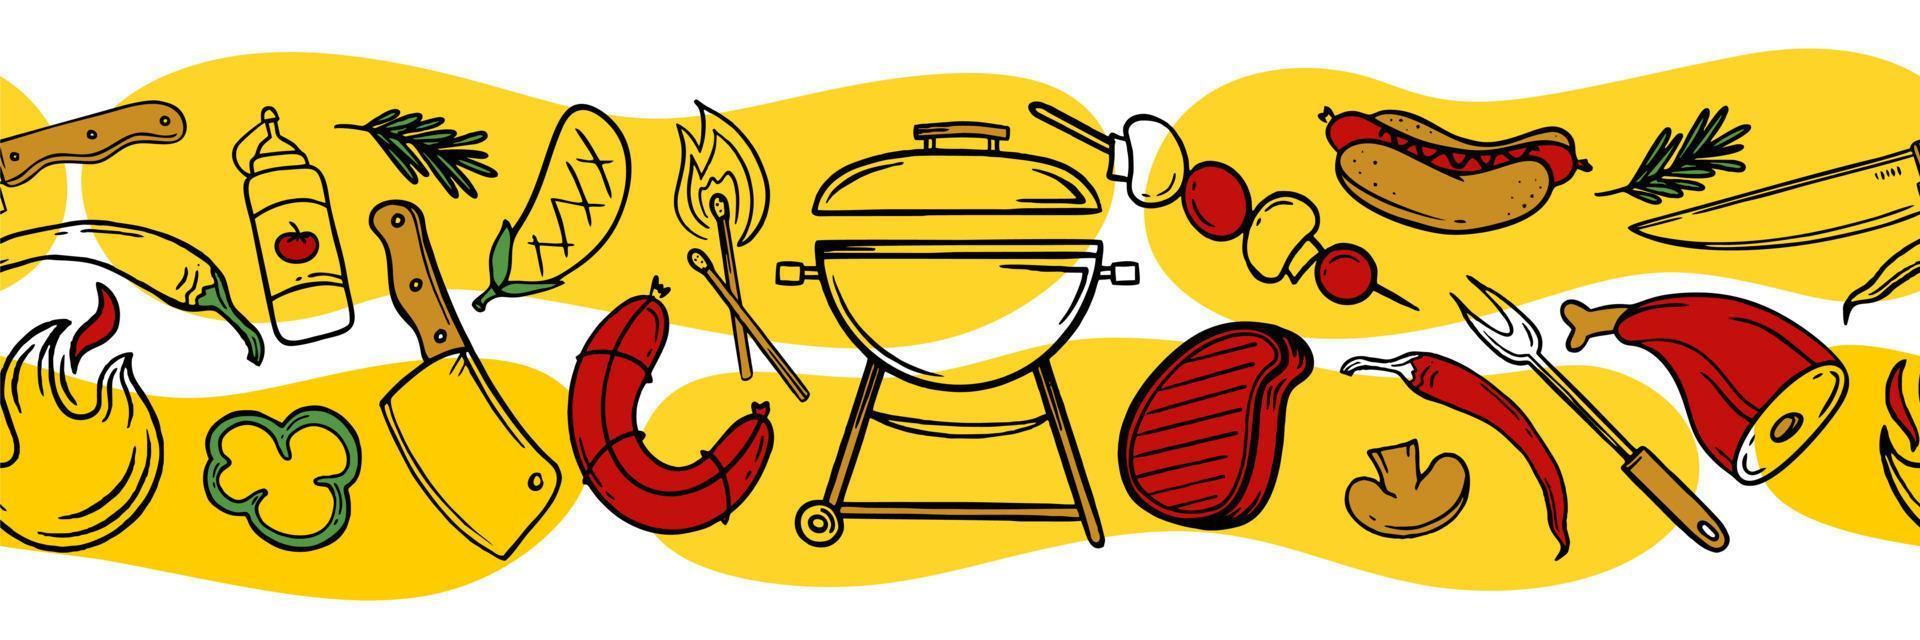 modèle horizontal avec des éléments de grill et de barbecue pour le menu du café du bar du restaurant sur fond jaune et blanc illustration vectorielle de griffonnages vecteur